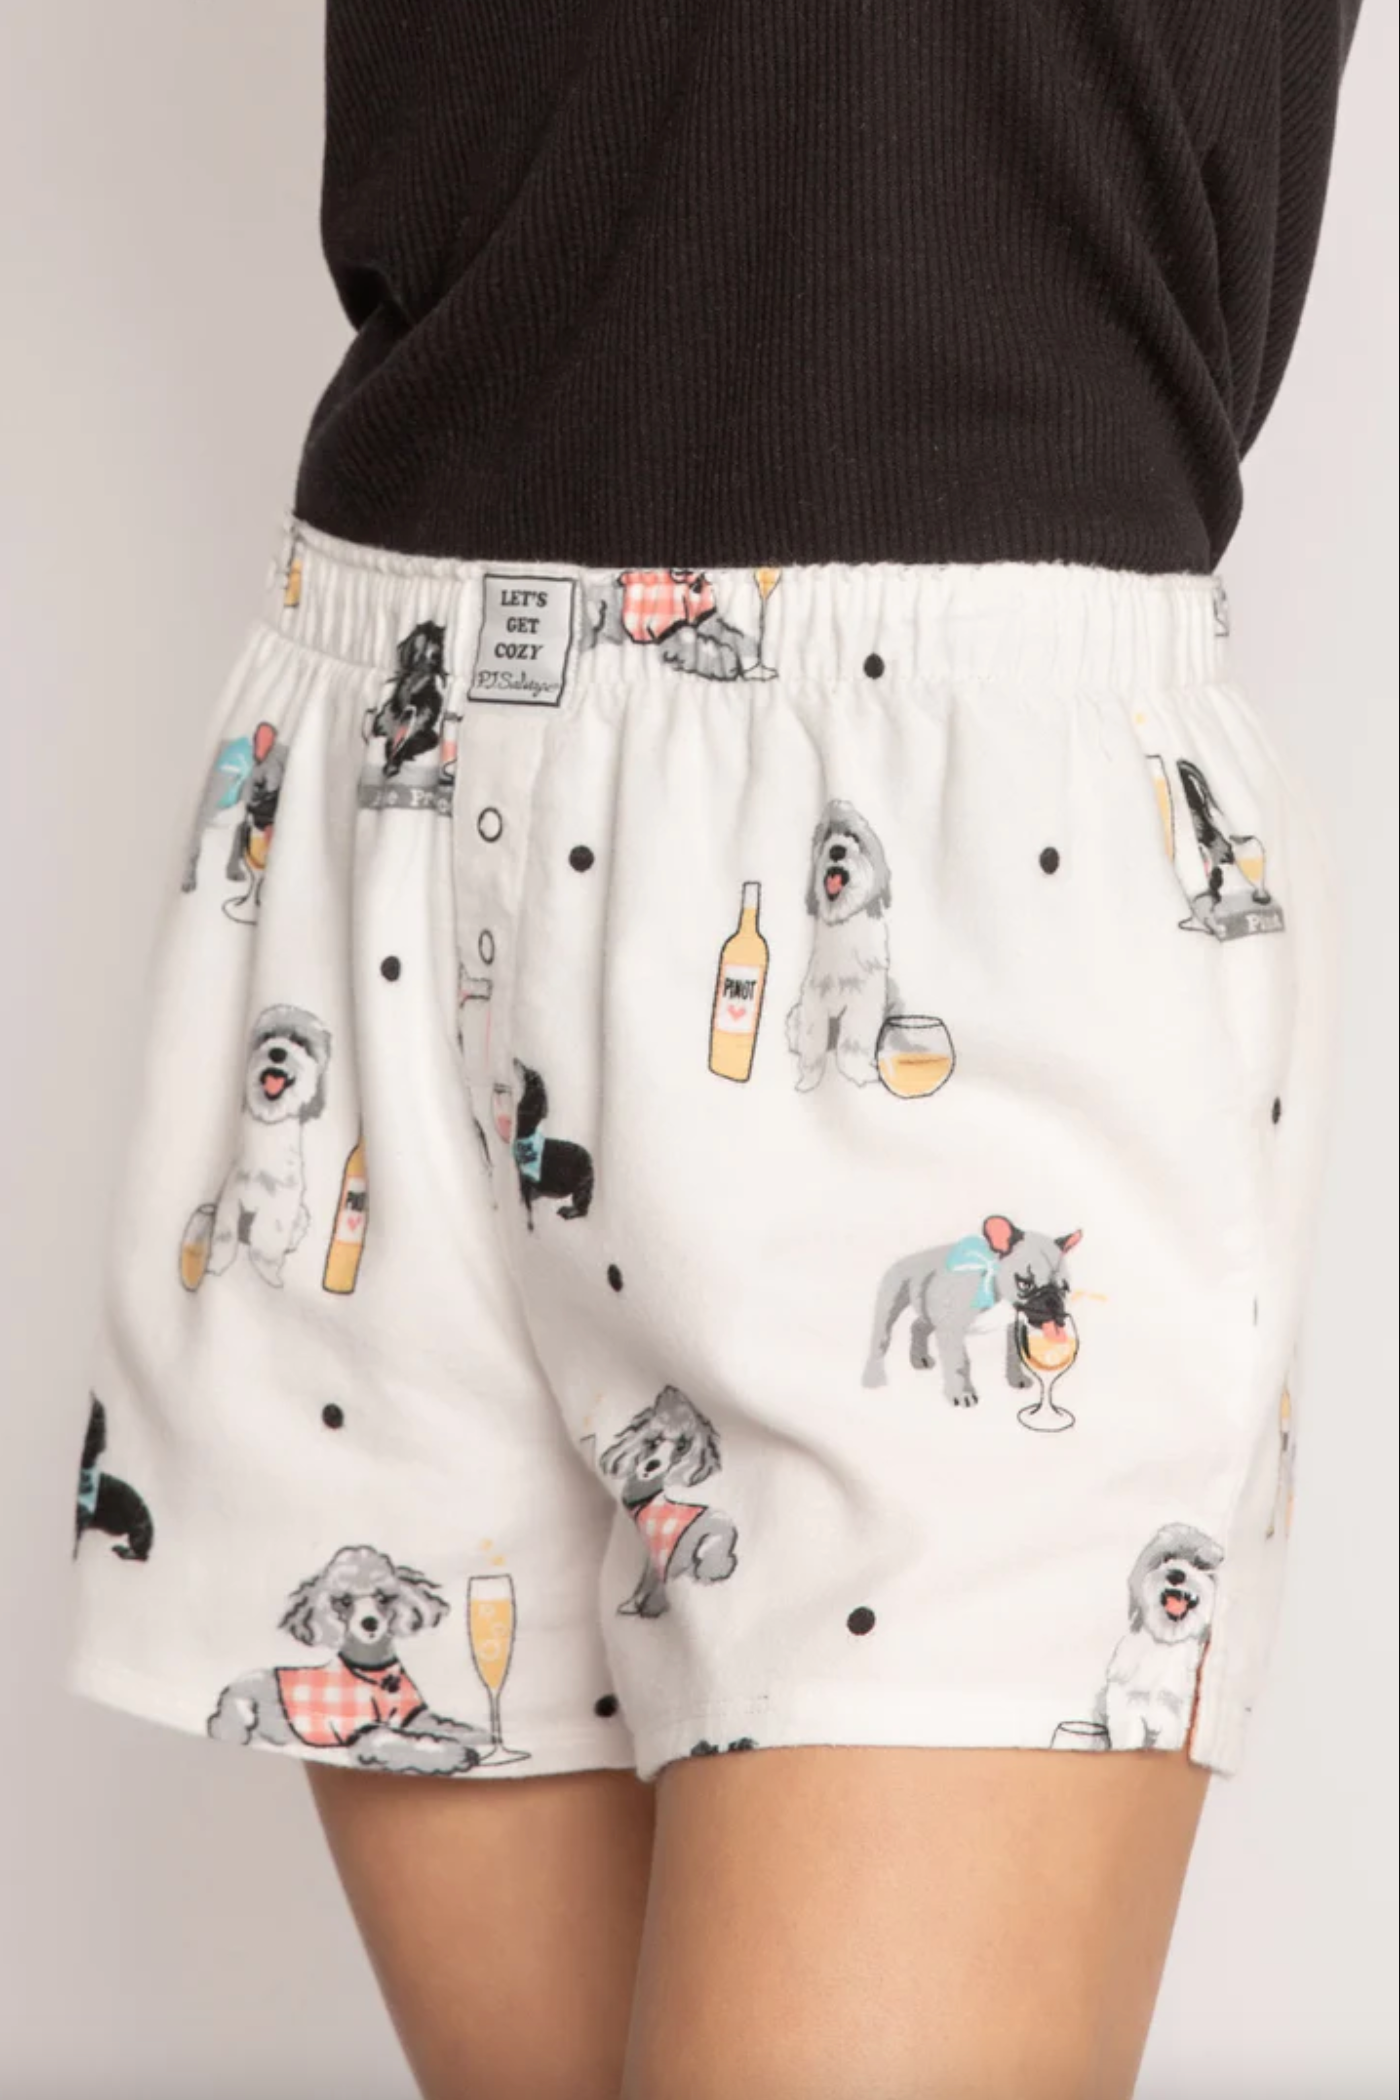 Flannel Dogs PJ Short Loungewear in XS at Wrapsody